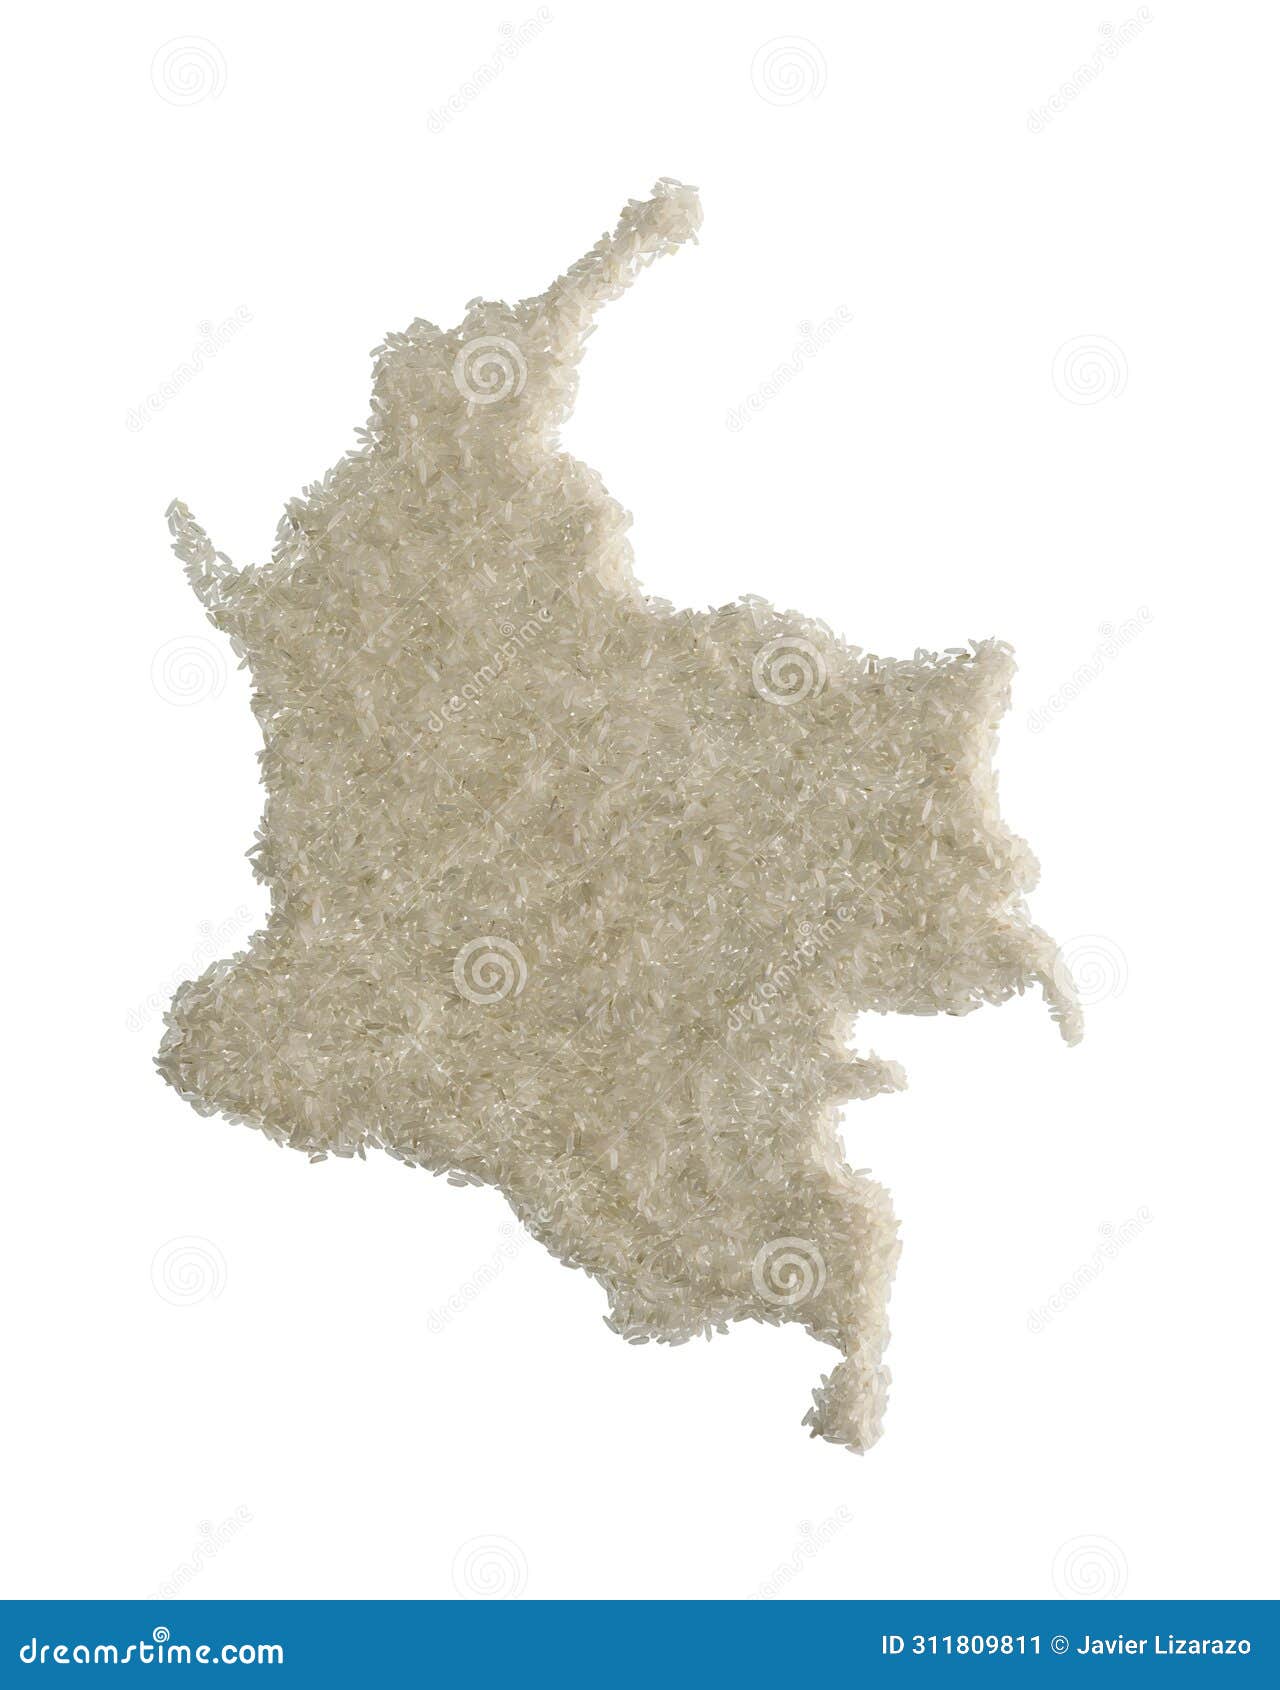 mapa de colombia hecho en arroz blanco crudo, editorial con espacio para textos